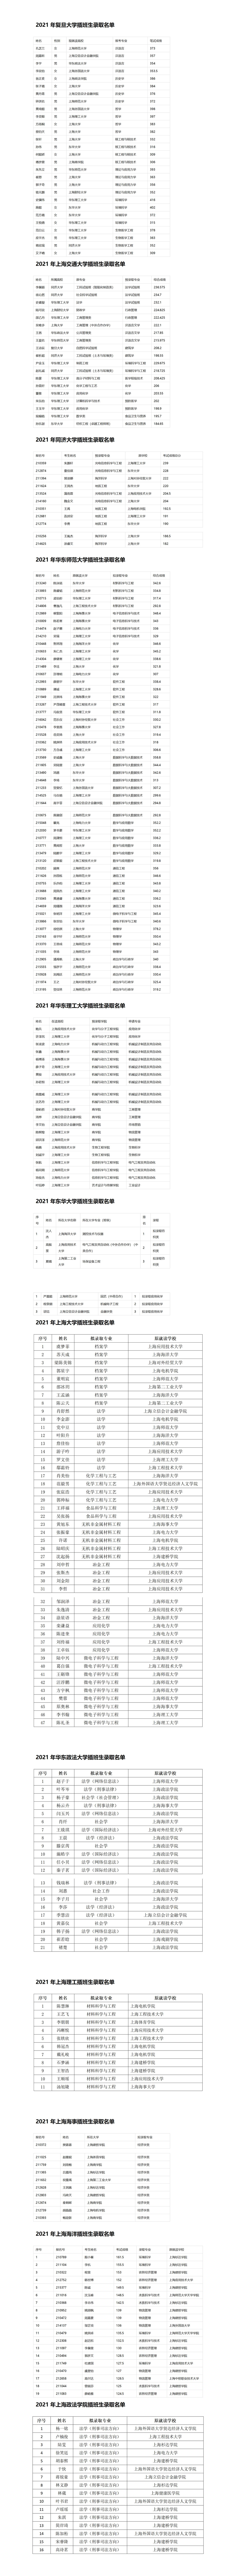 2021年上海插班生录取名单_01.jpg